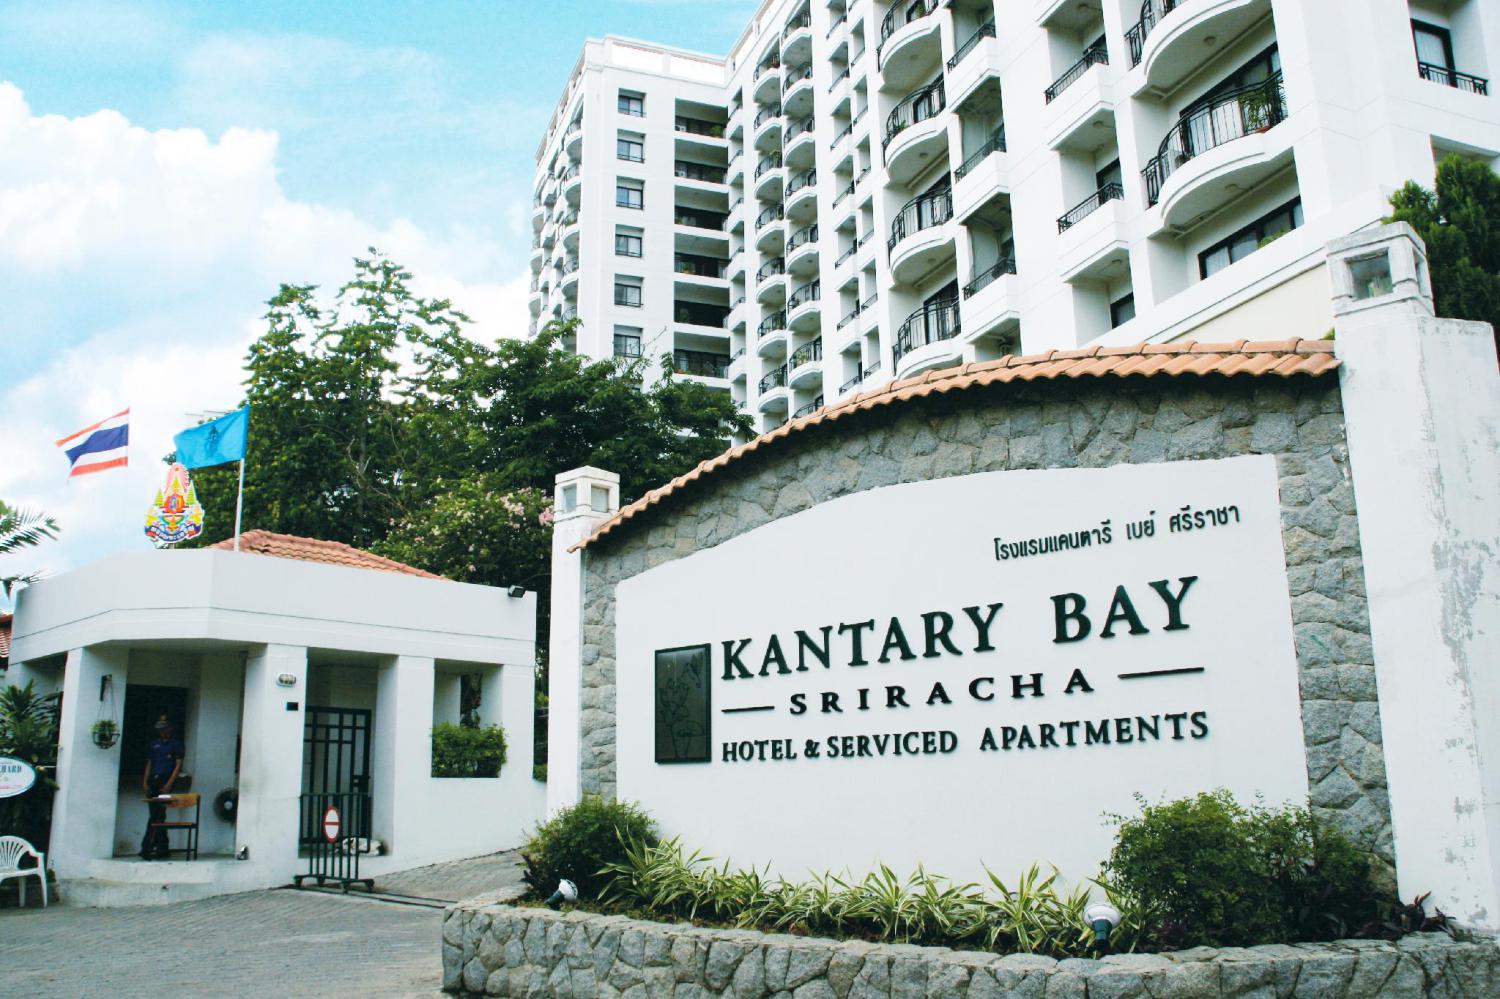 Kantary Bay Hotel & Serviced Apartments Sriracha - Image 3